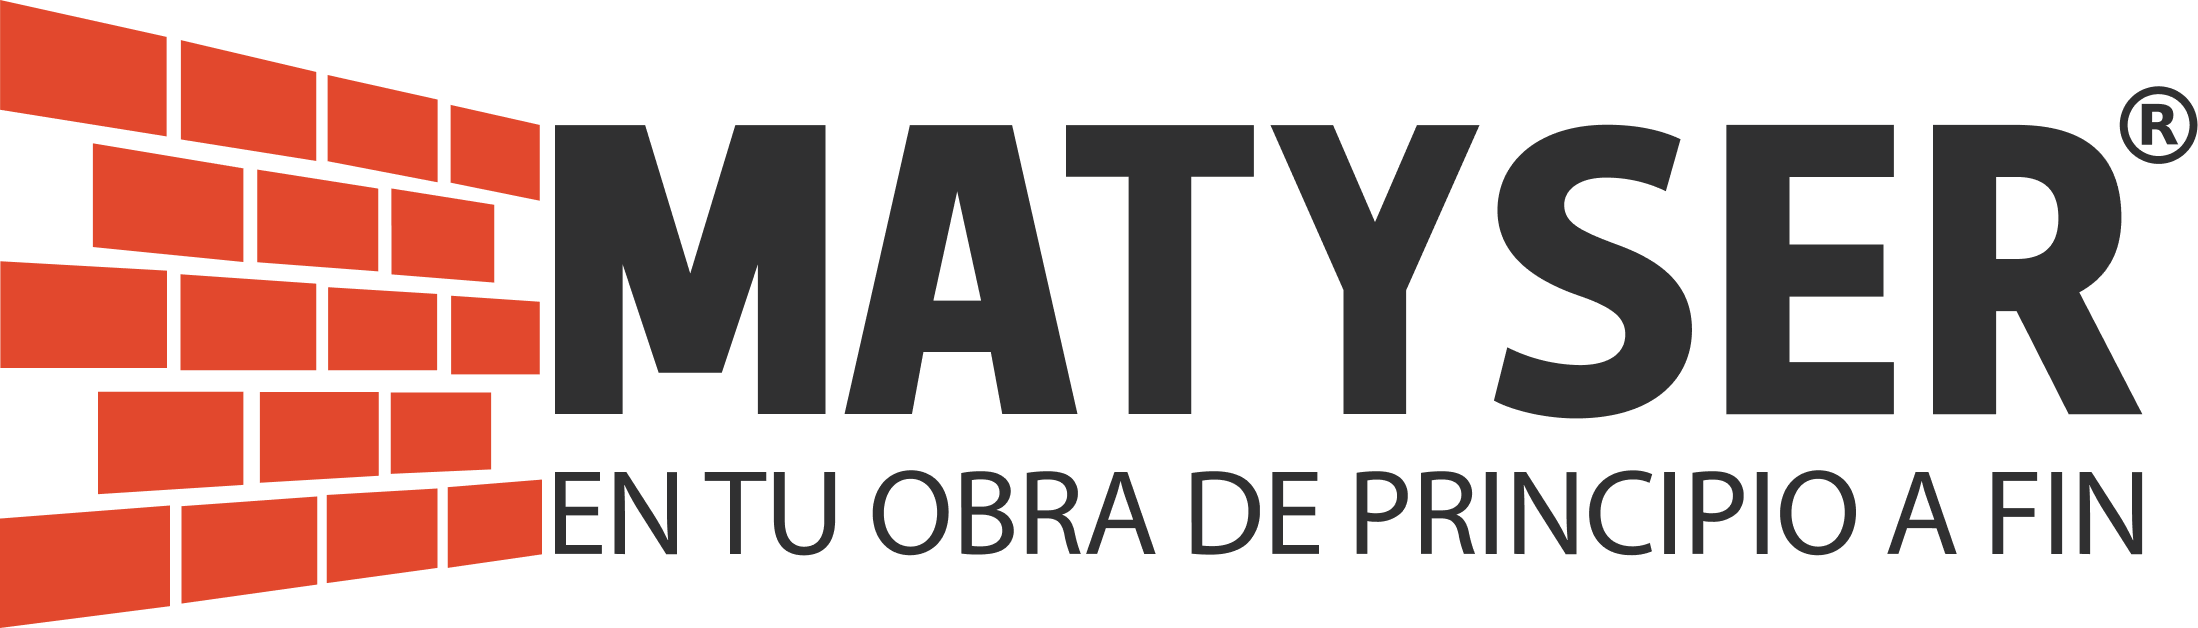 Matyser